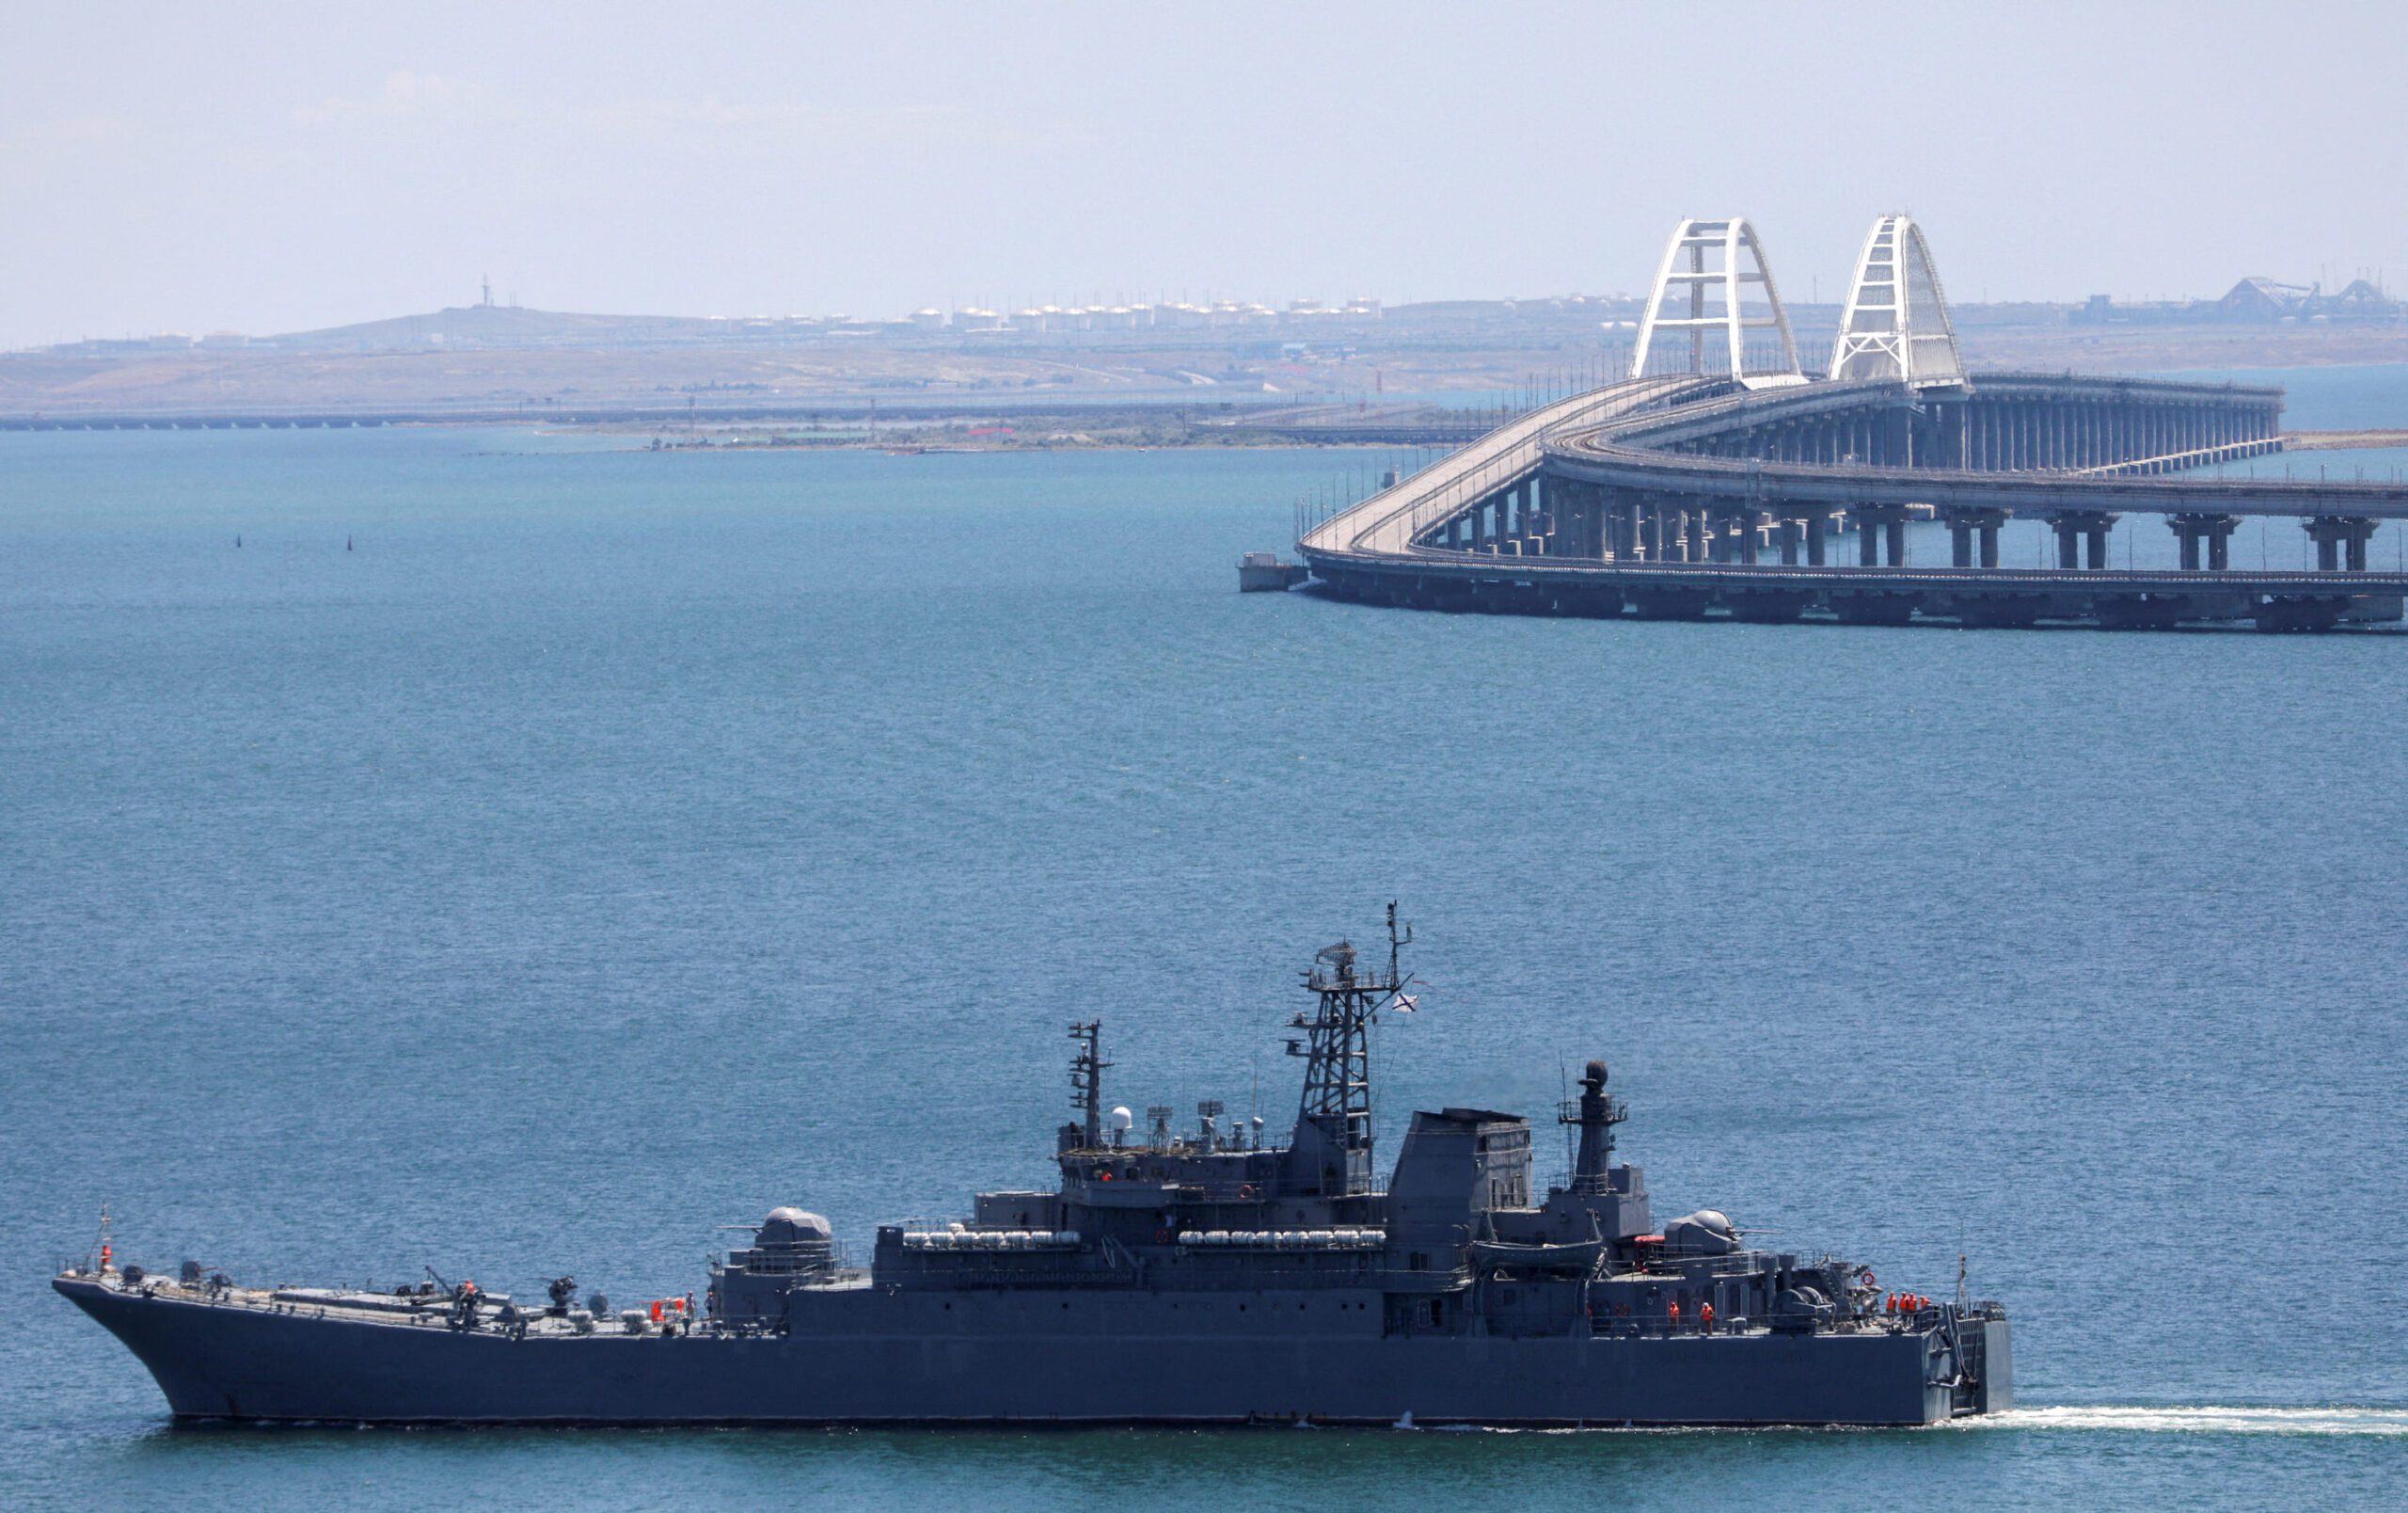 Crimea Kerch Strait bridge guarded by Russian navy warship